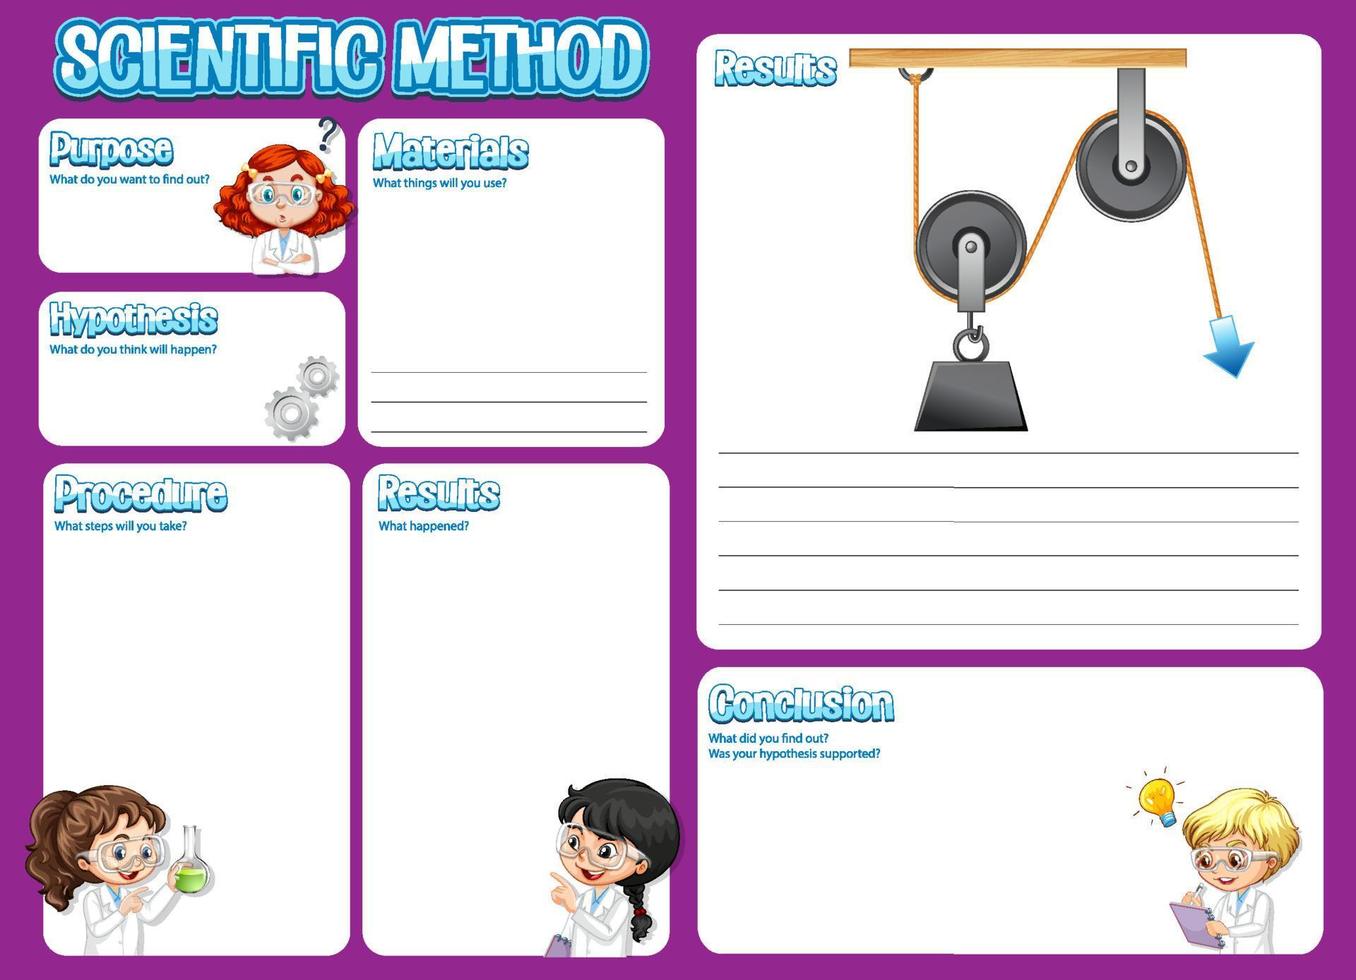 The science method worksheet for children vector